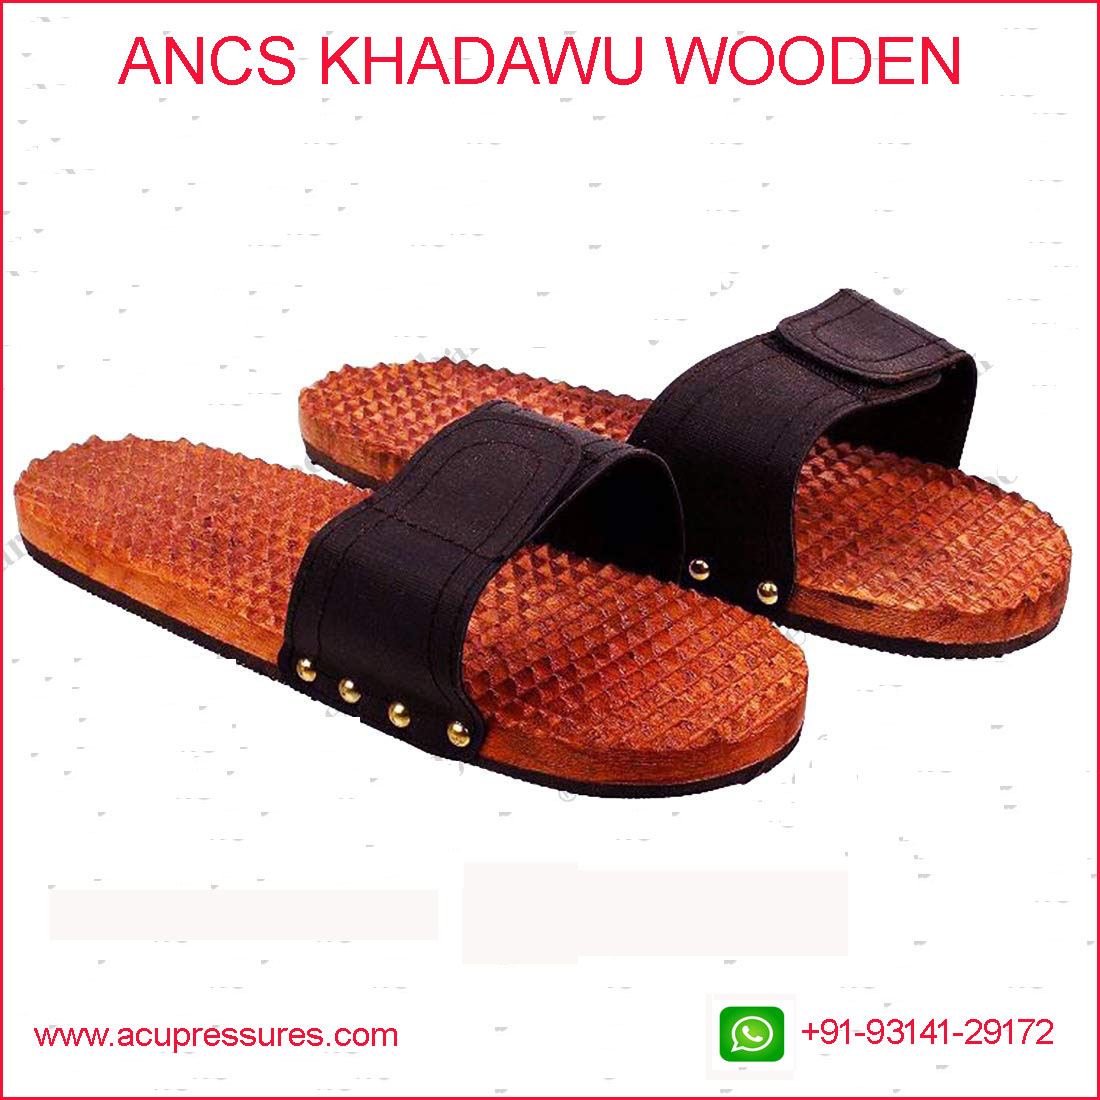 Acupressure Khadawoo wooden best 